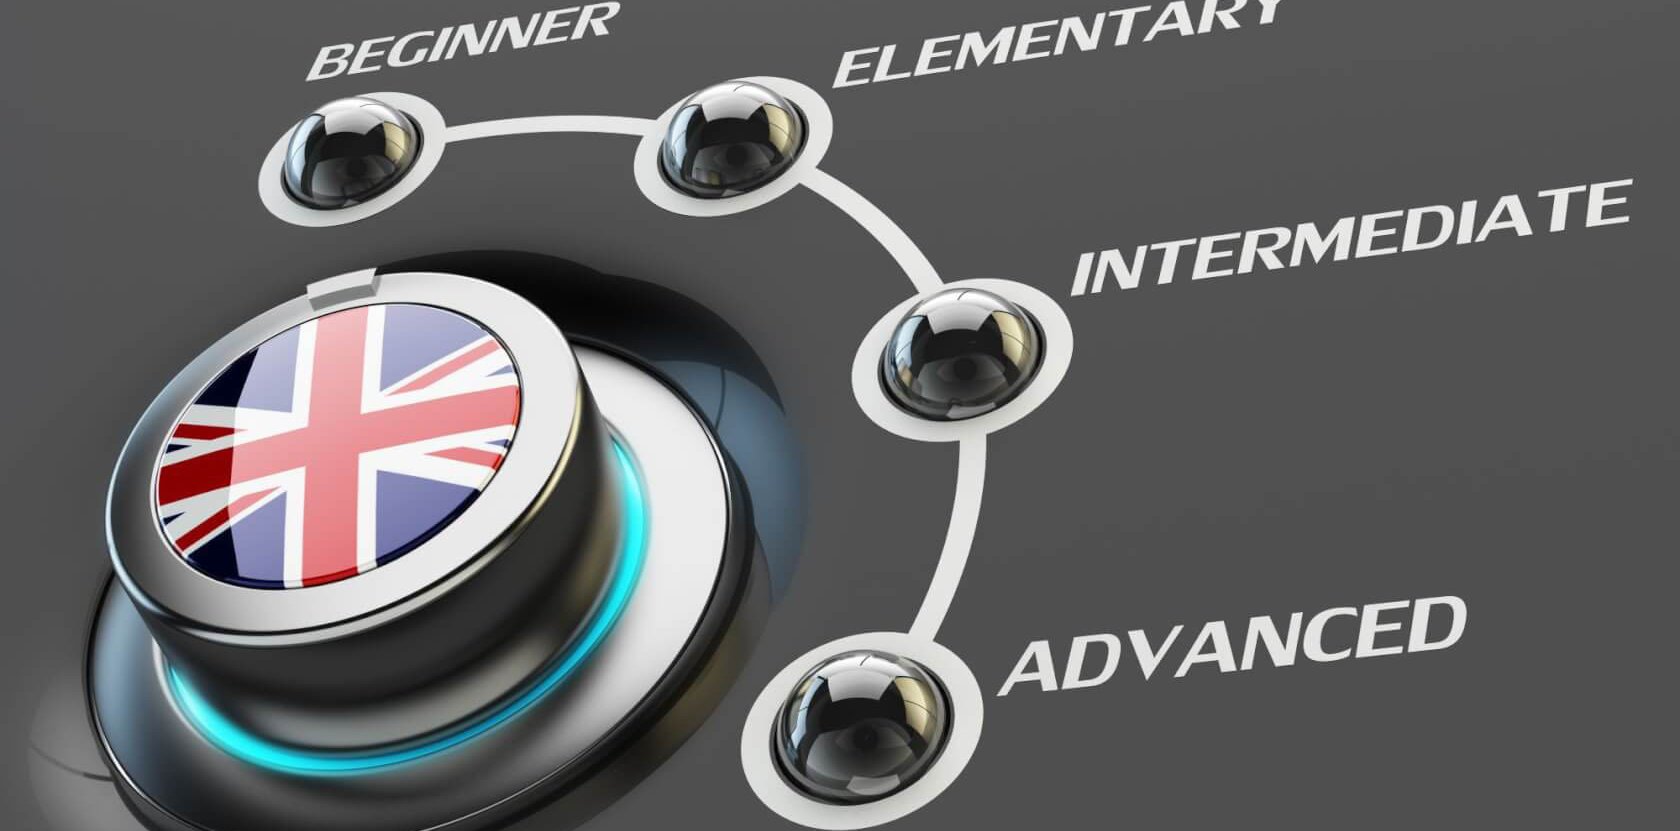 Un botó giratori de selecció amb la bandera del Regne Unit i amb quatre nivells: beginner, elementary, intermediate i advanced